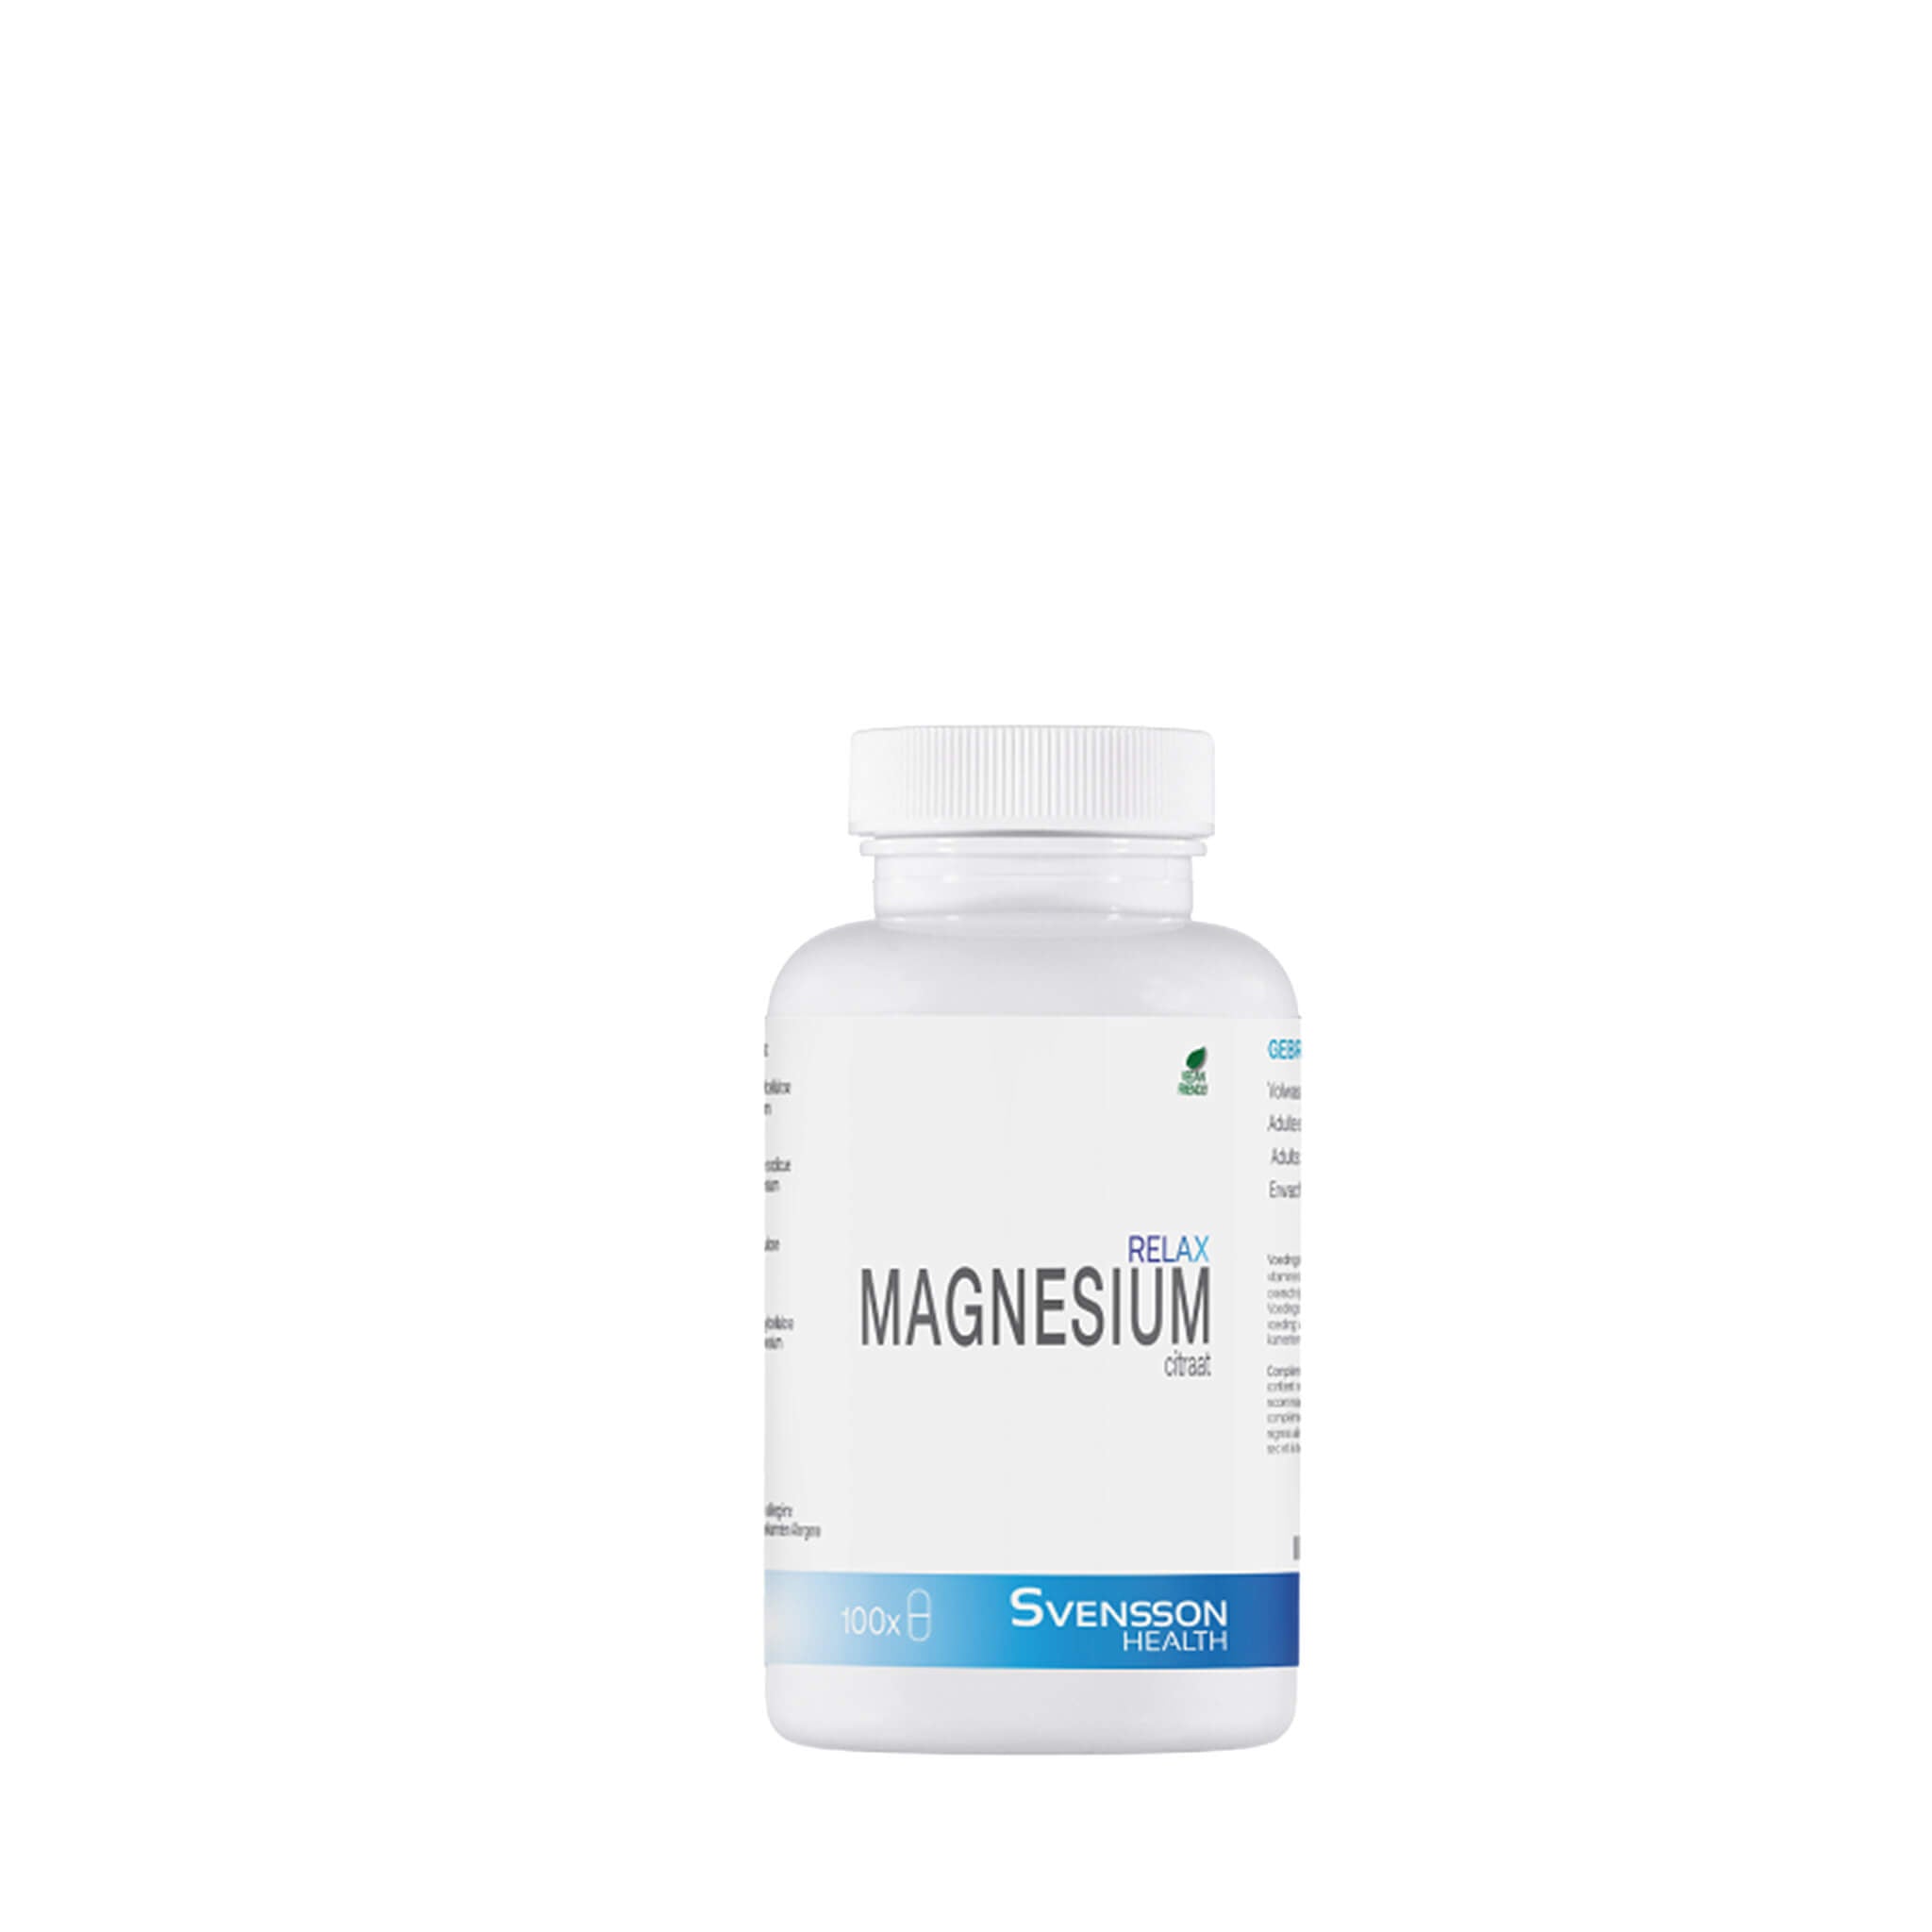 Magnesium Relax kopen | 200 mg Magnesium Citraat | 100 tabletten